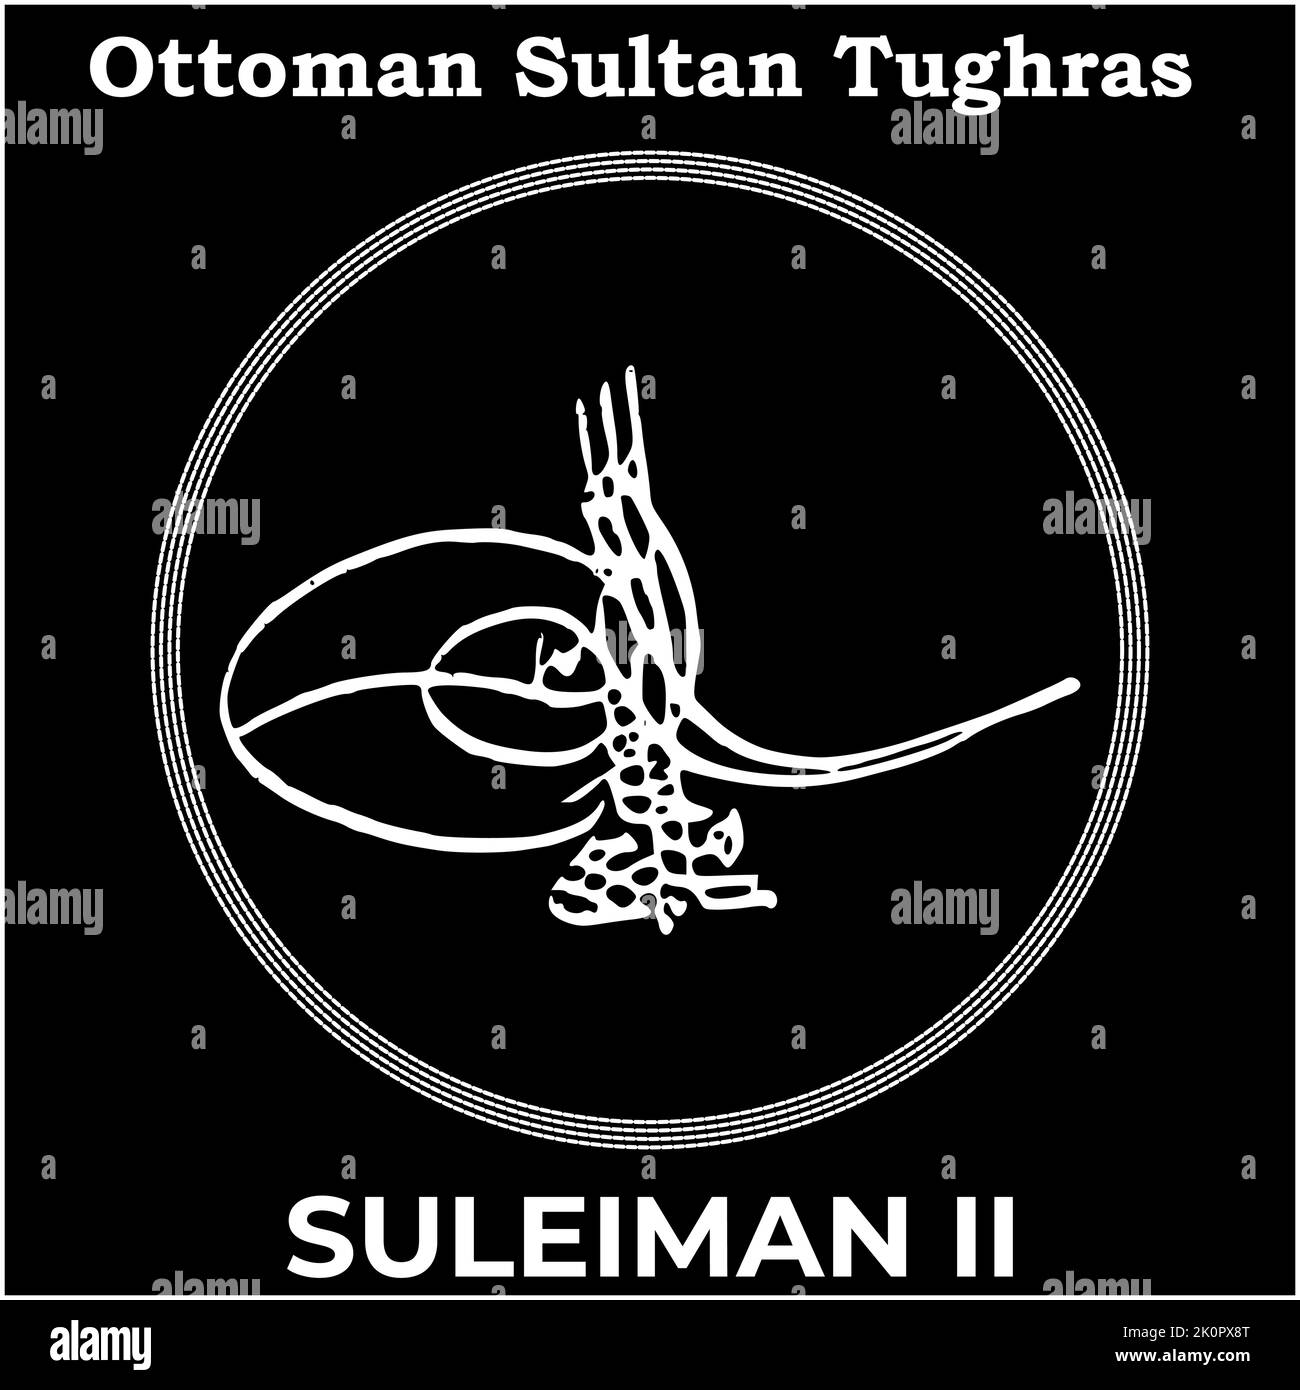 Immagine vettoriale con la firma Tughra di Ottomano Twentieth Sultan Suleiman II, Tughra di Suleiman II con sfondo nero. Illustrazione Vettoriale